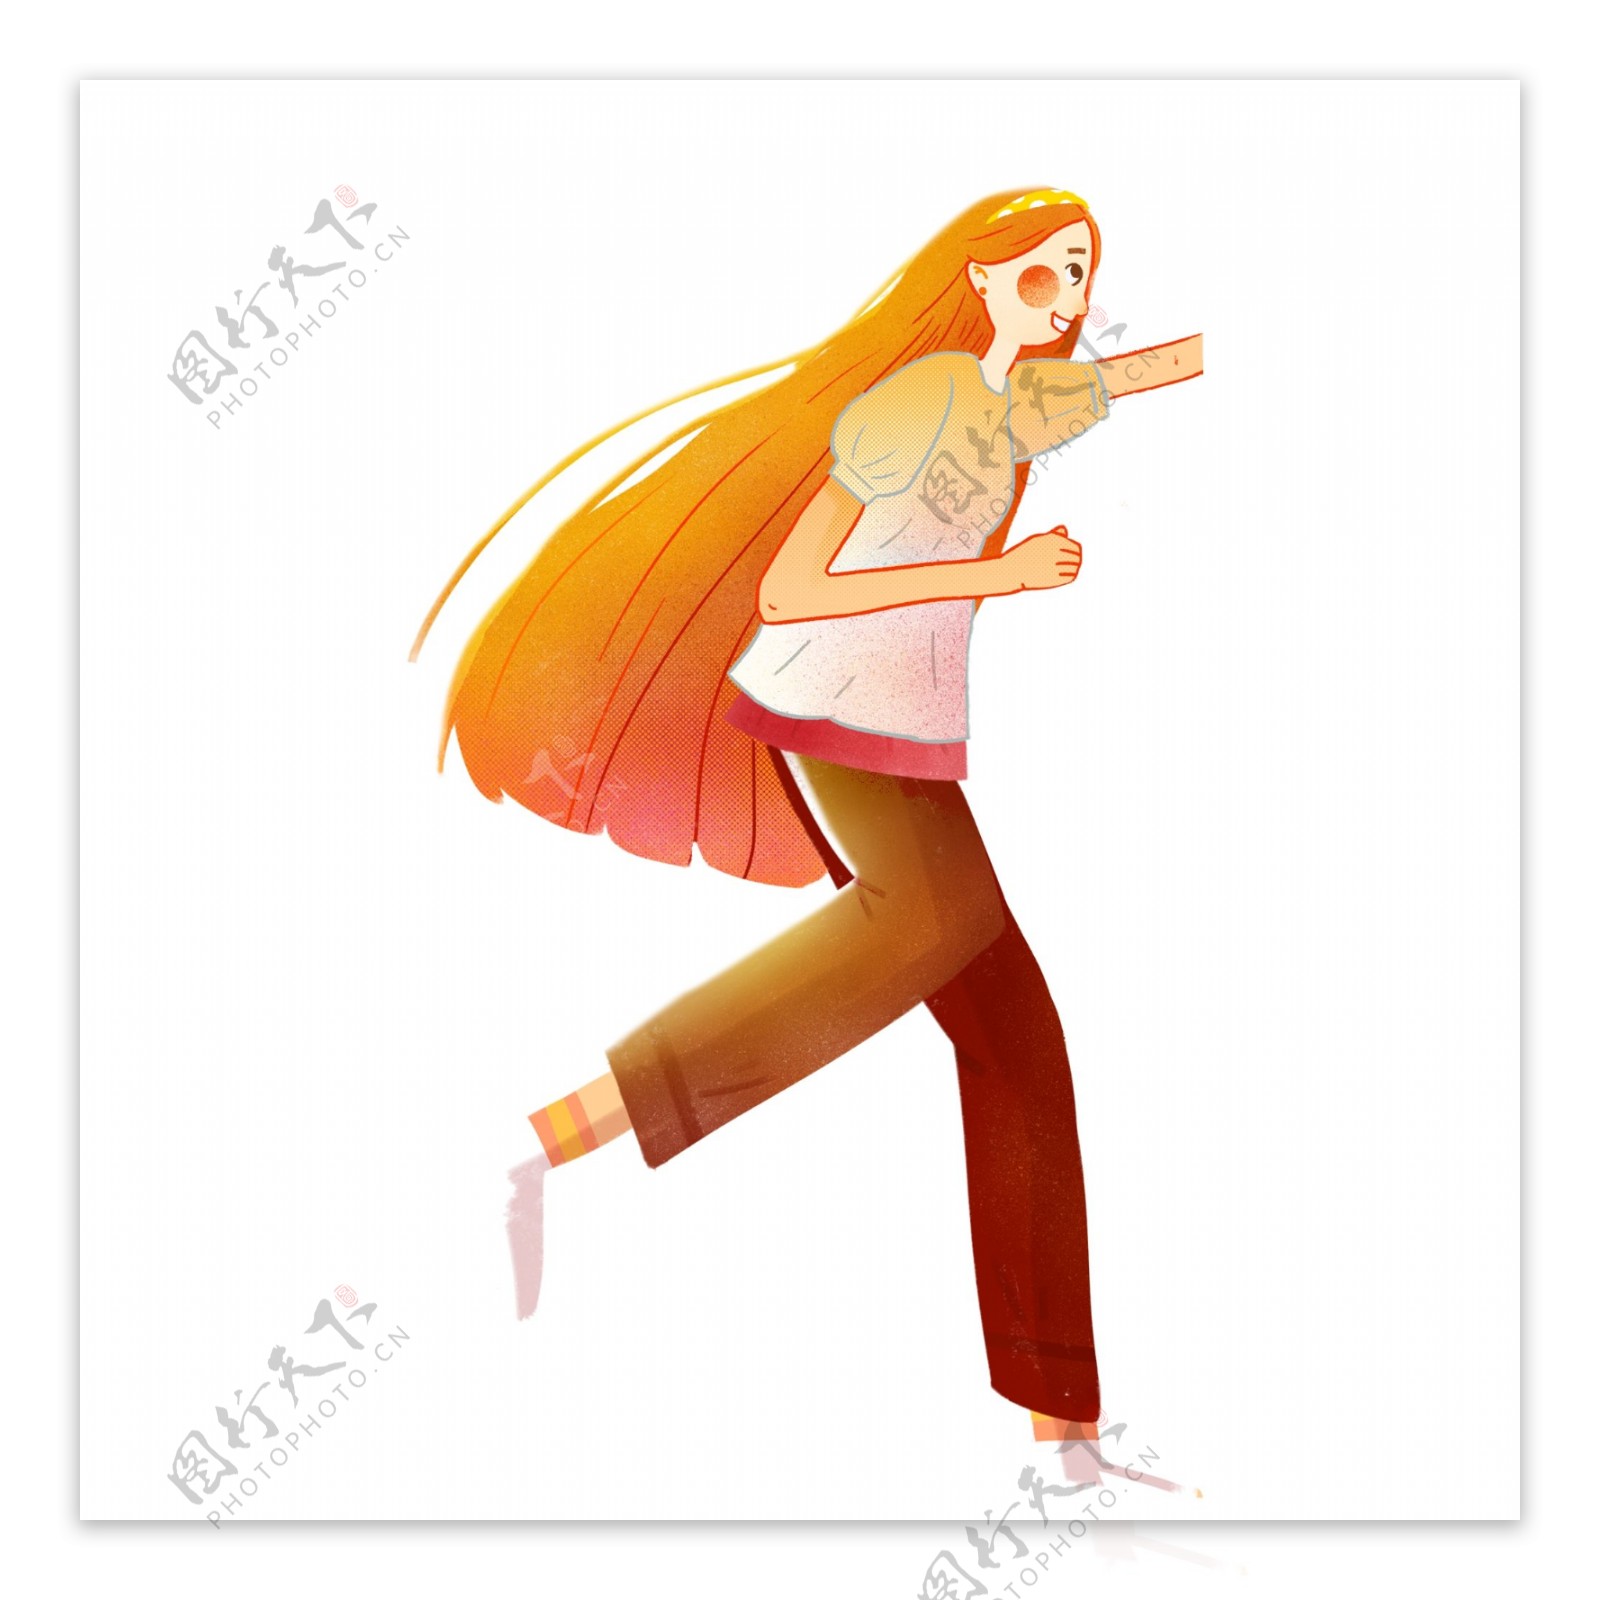 清新手绘奔跑的少女卡通设计